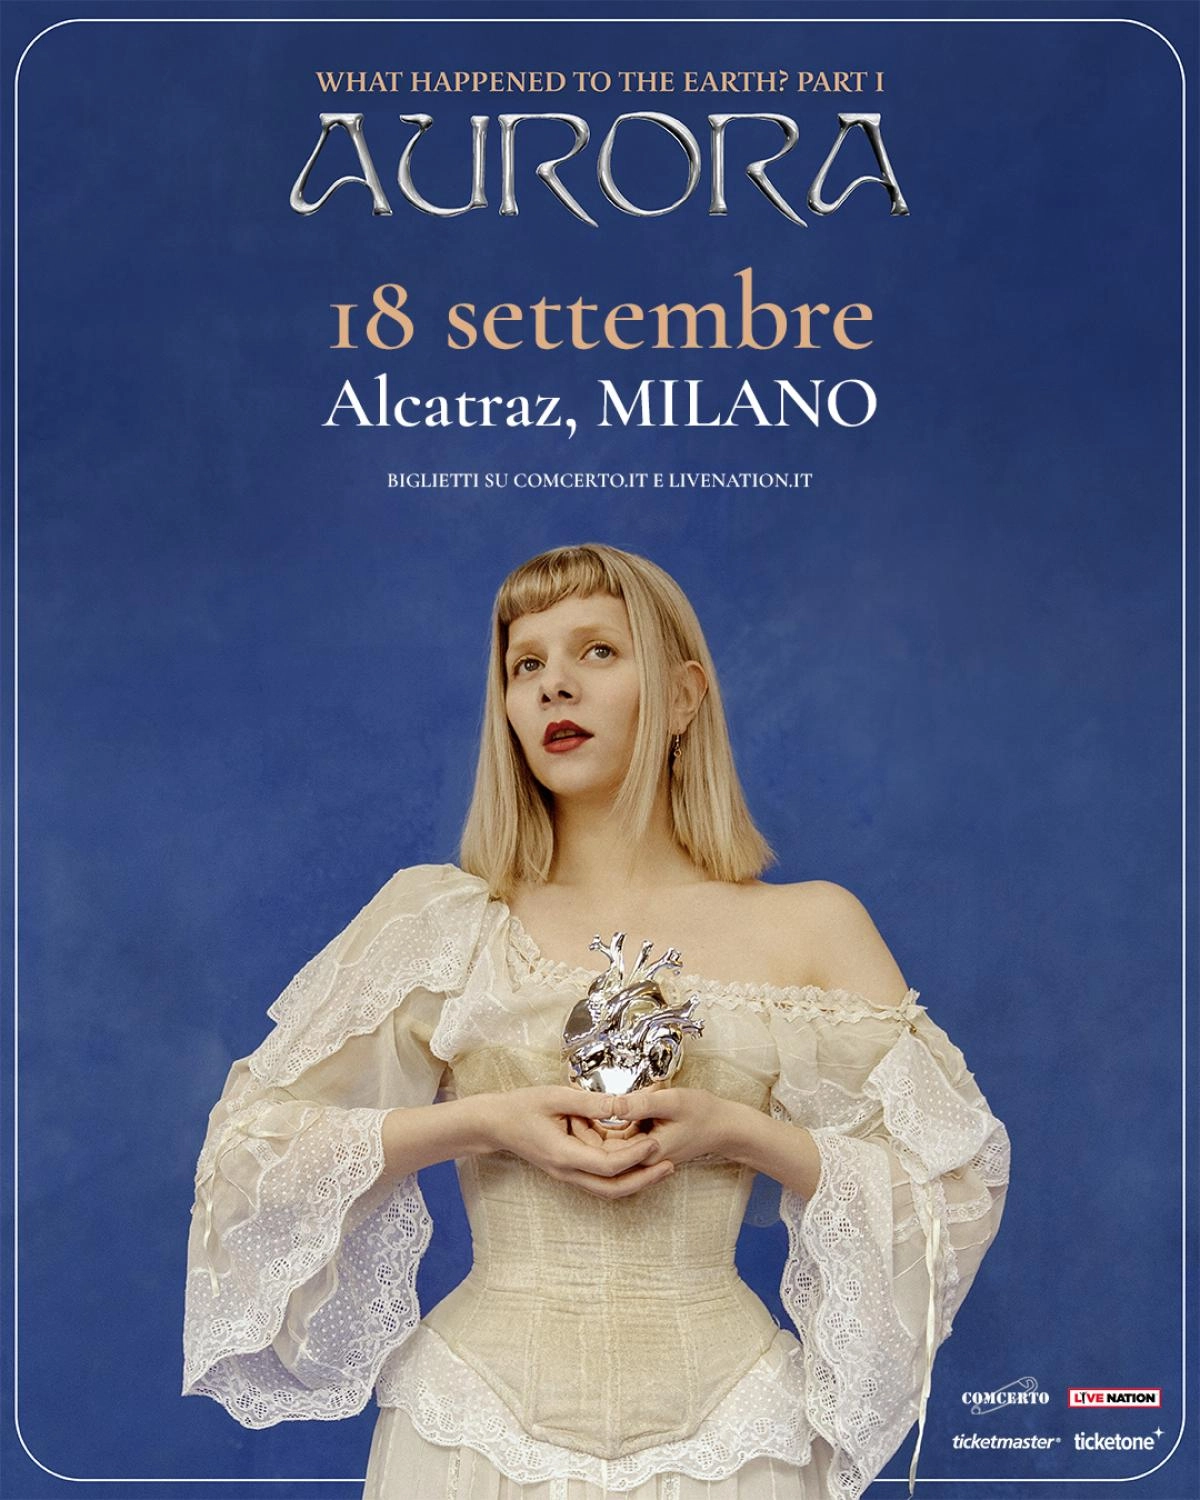 Aurora in der Alcatraz Mailand Tickets